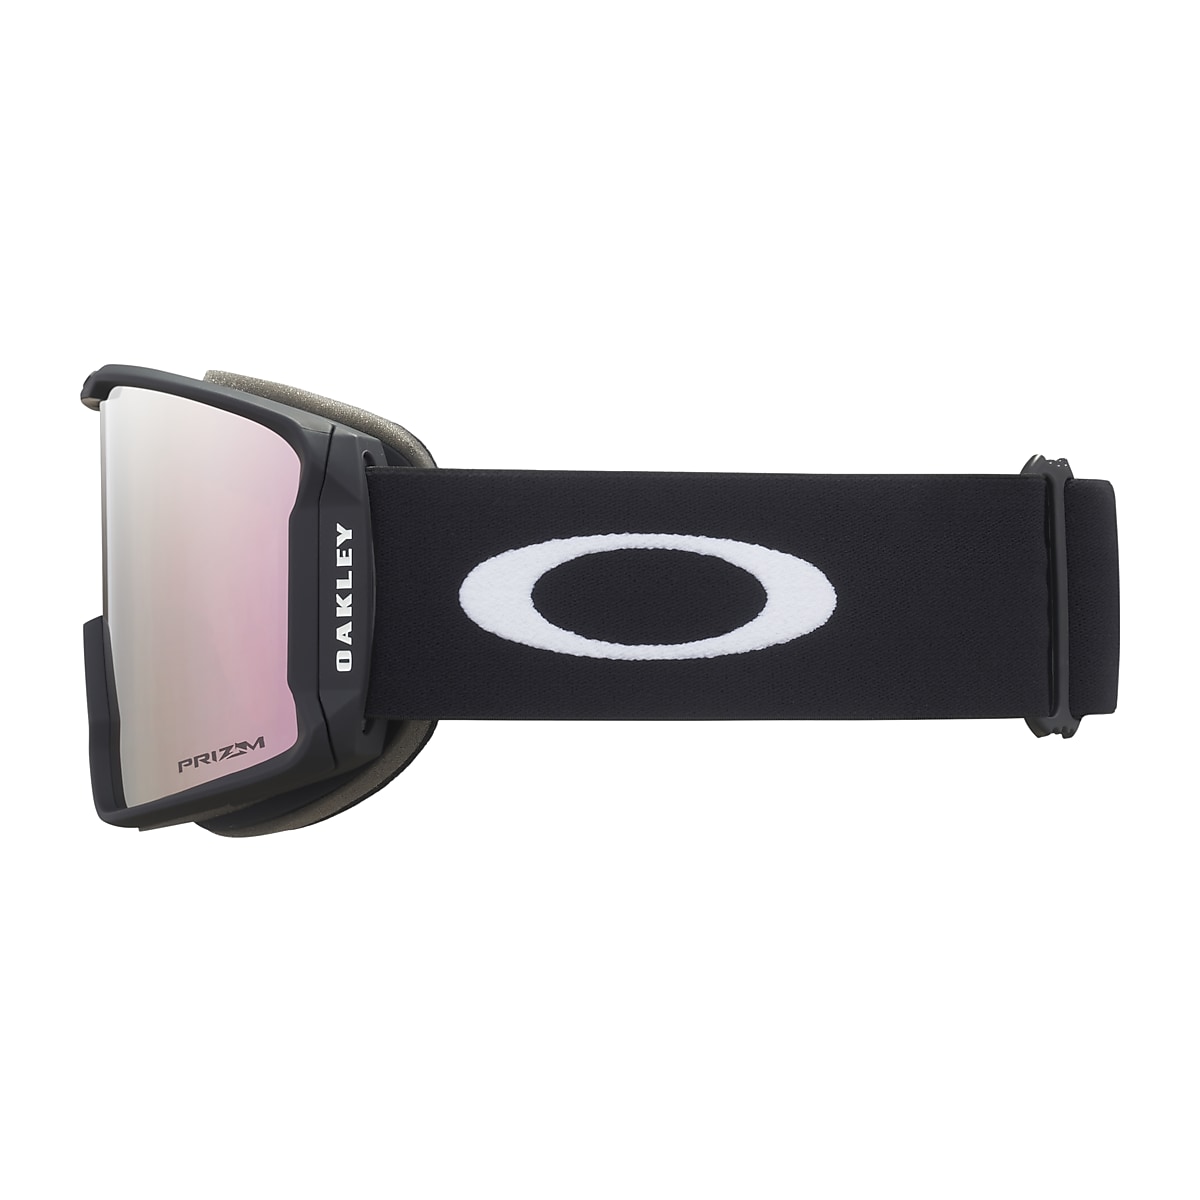 Oakley Line Miner™ L Snow Goggles - Matte Black - Prizm Rose Gold